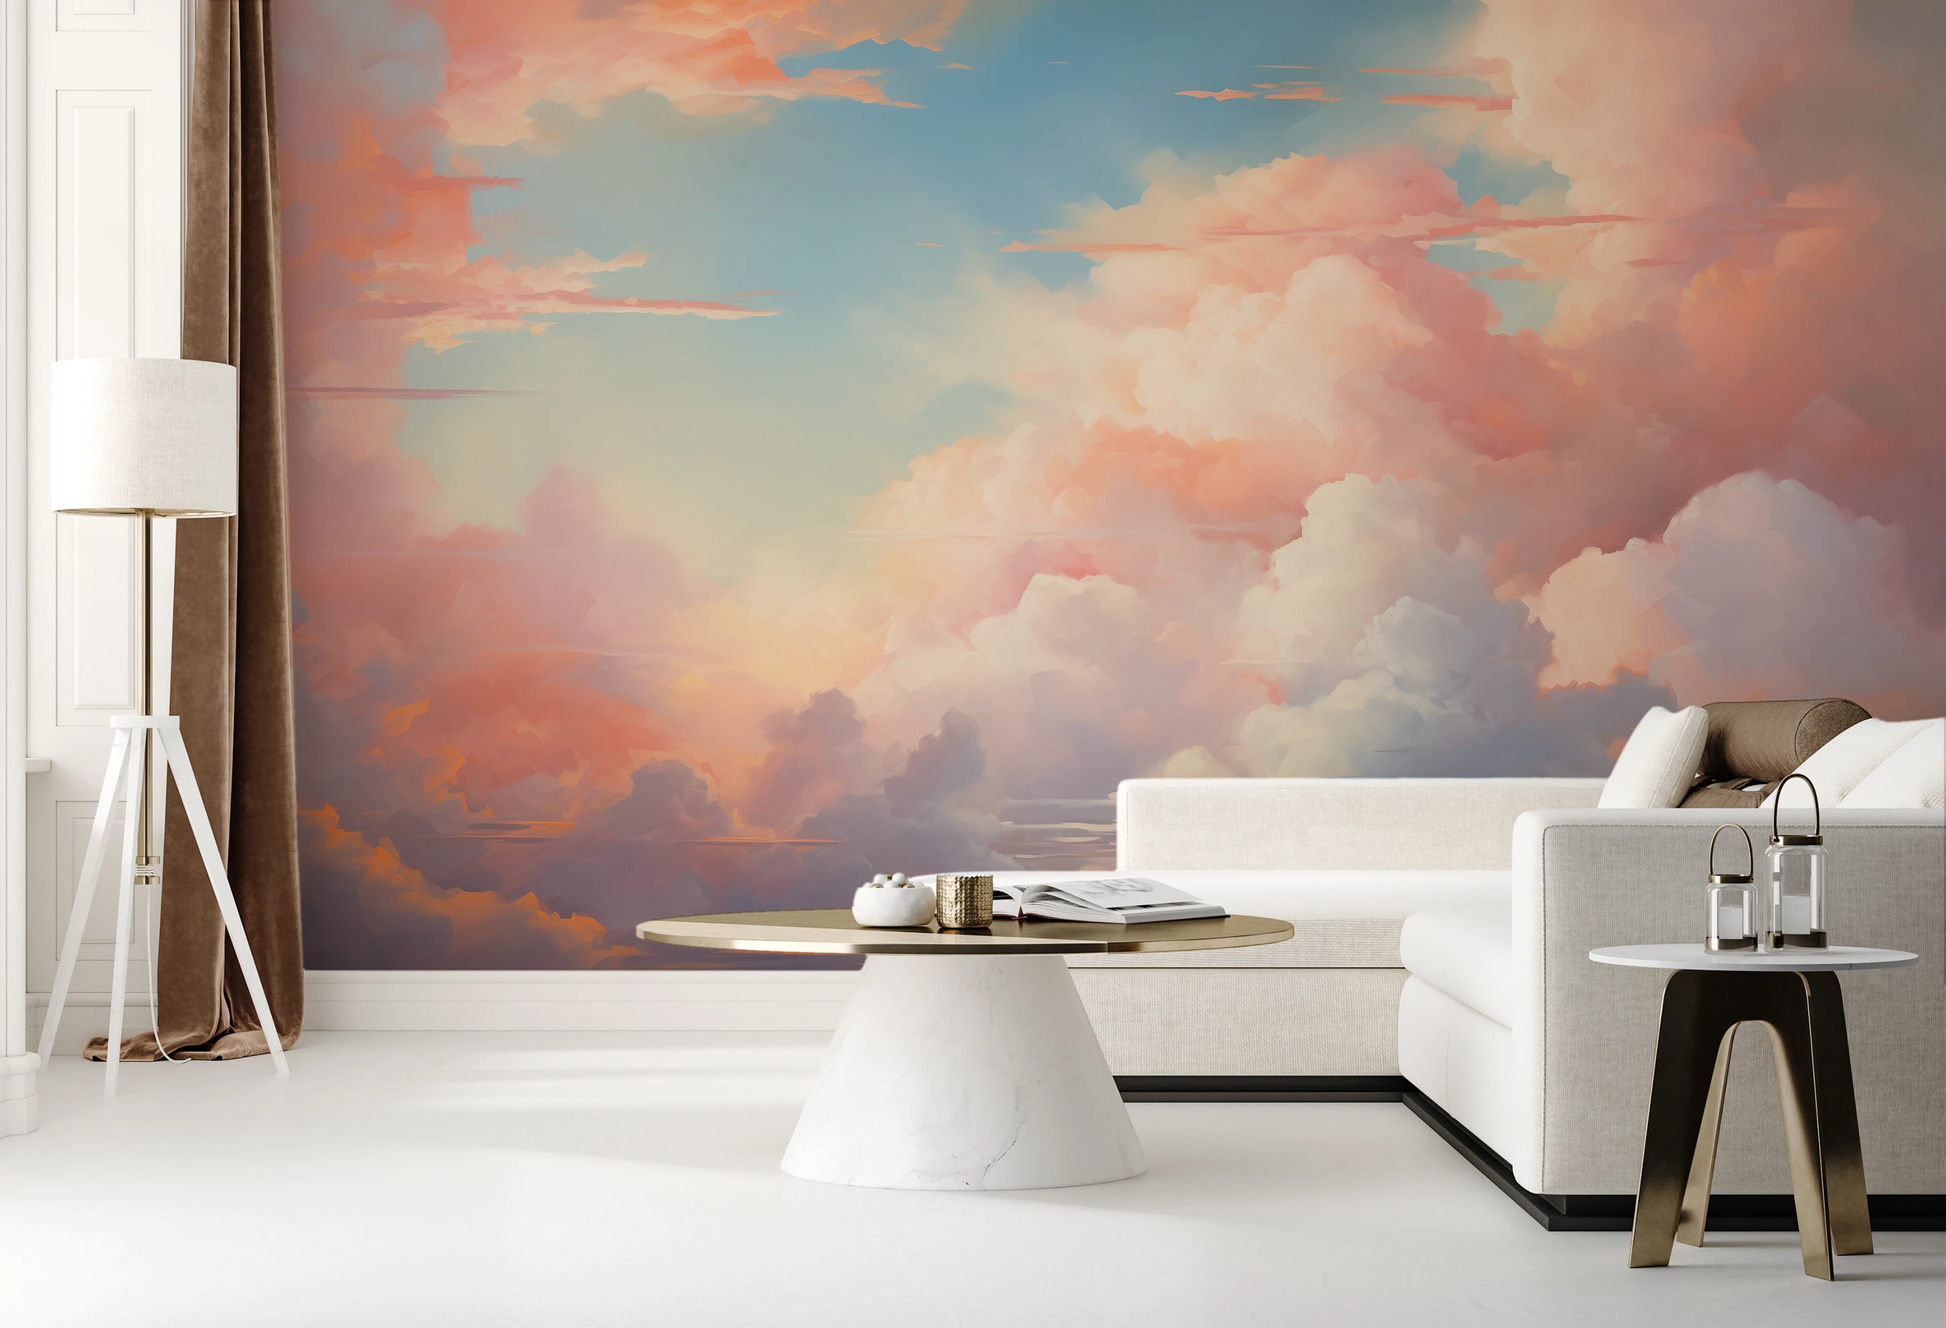 Fototapeta malowana o nazwie Peach Harmony pokazana w aranżacji wnętrza.